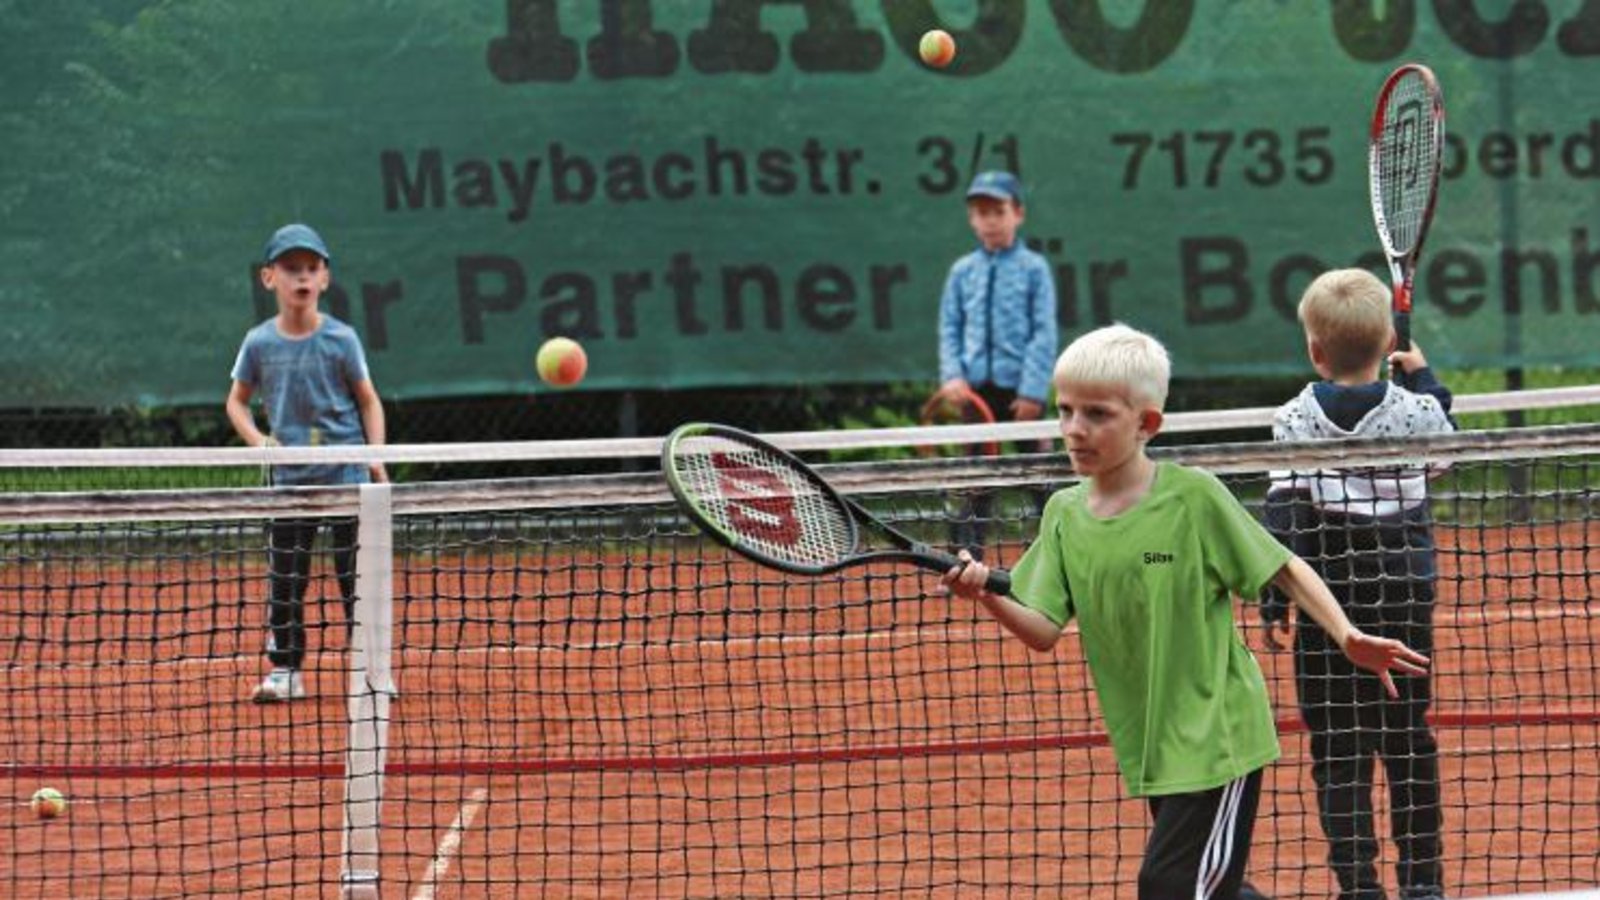 Bevor das Hochdorfer Tennis-Camp zu Ende ging, haben die jungen Teilnehmer bei einem richtigen Abschlussturnier ihre Kräfte gemessen. Foto: Küppers